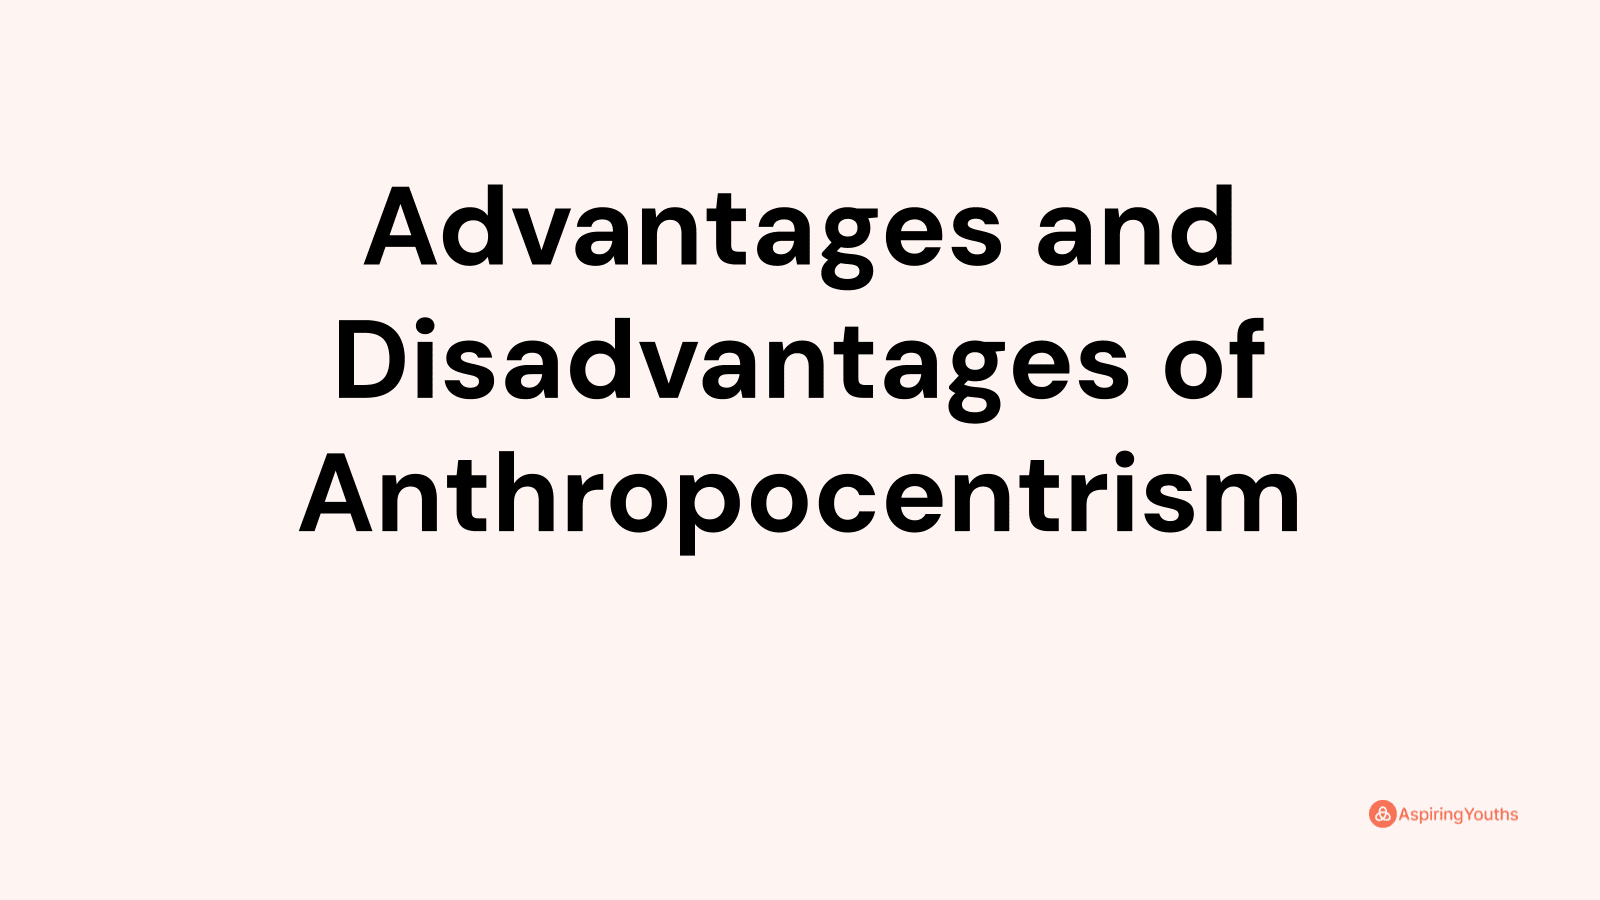 Advantages and disadvantages of Anthropocentrism